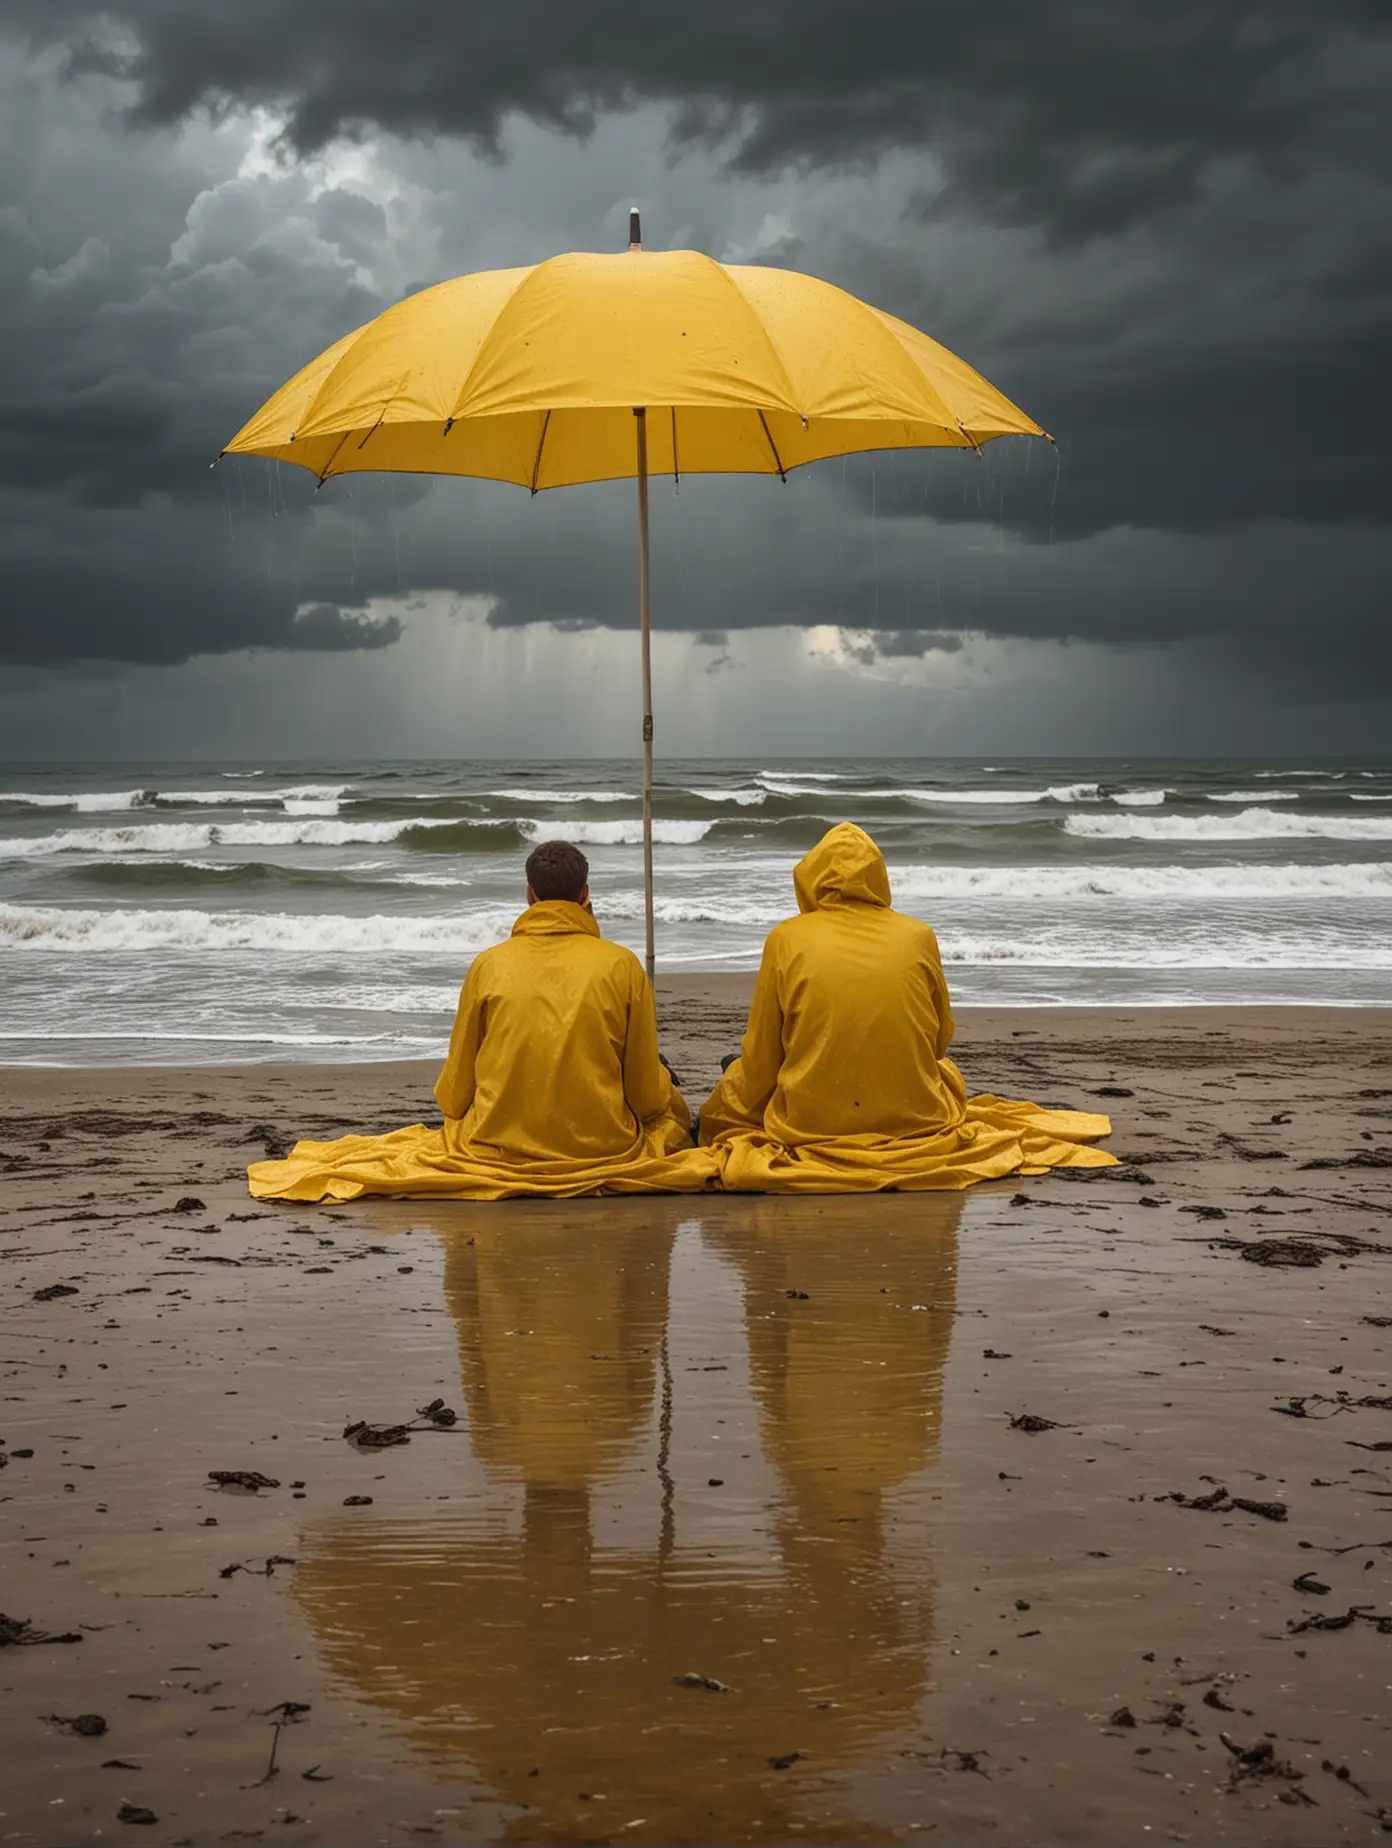 un couple en ciré jaune, assis sur la plage, sous un gros parapluie, une bâche en plastique posée sur le sable, il pleut à verse, décor mer bretagne, ciel gris, menaçant, orage et éclairs, photograhie, réaliste